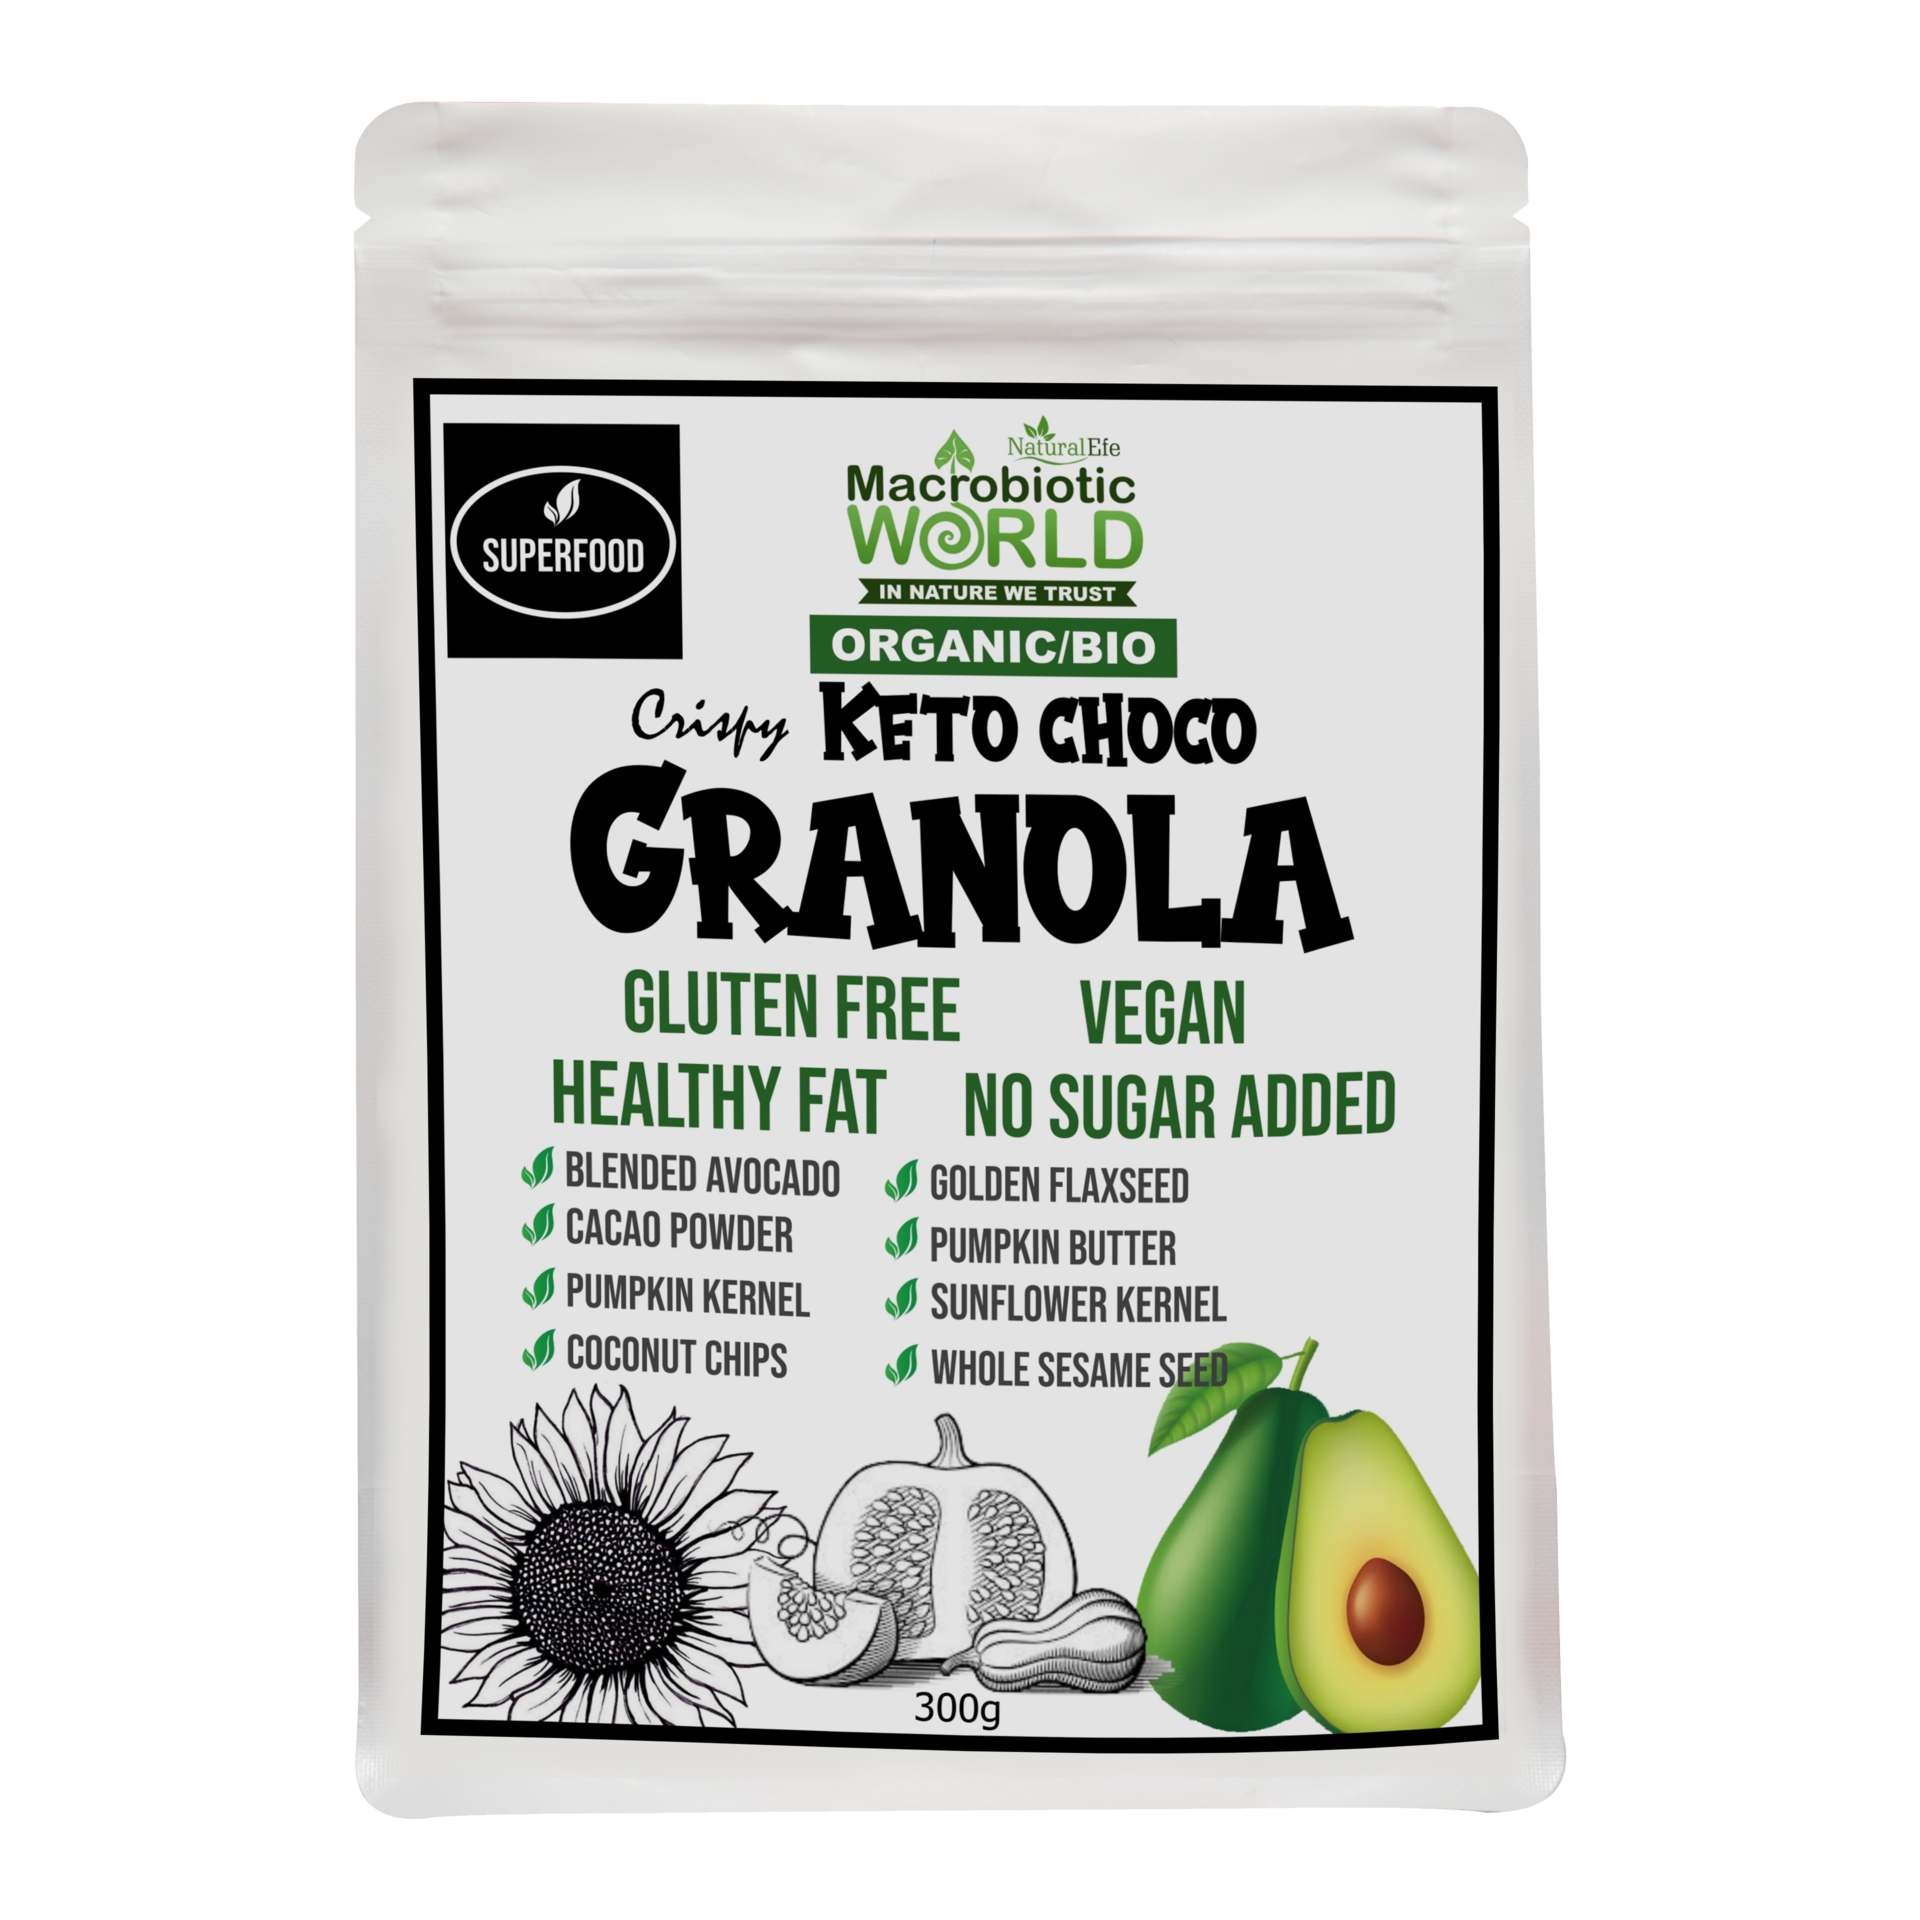 Organic/Bio Crispy Keto Choco Granola | คริสปี้ กราโนล่า ช็อคโกแลต คีโต 300g